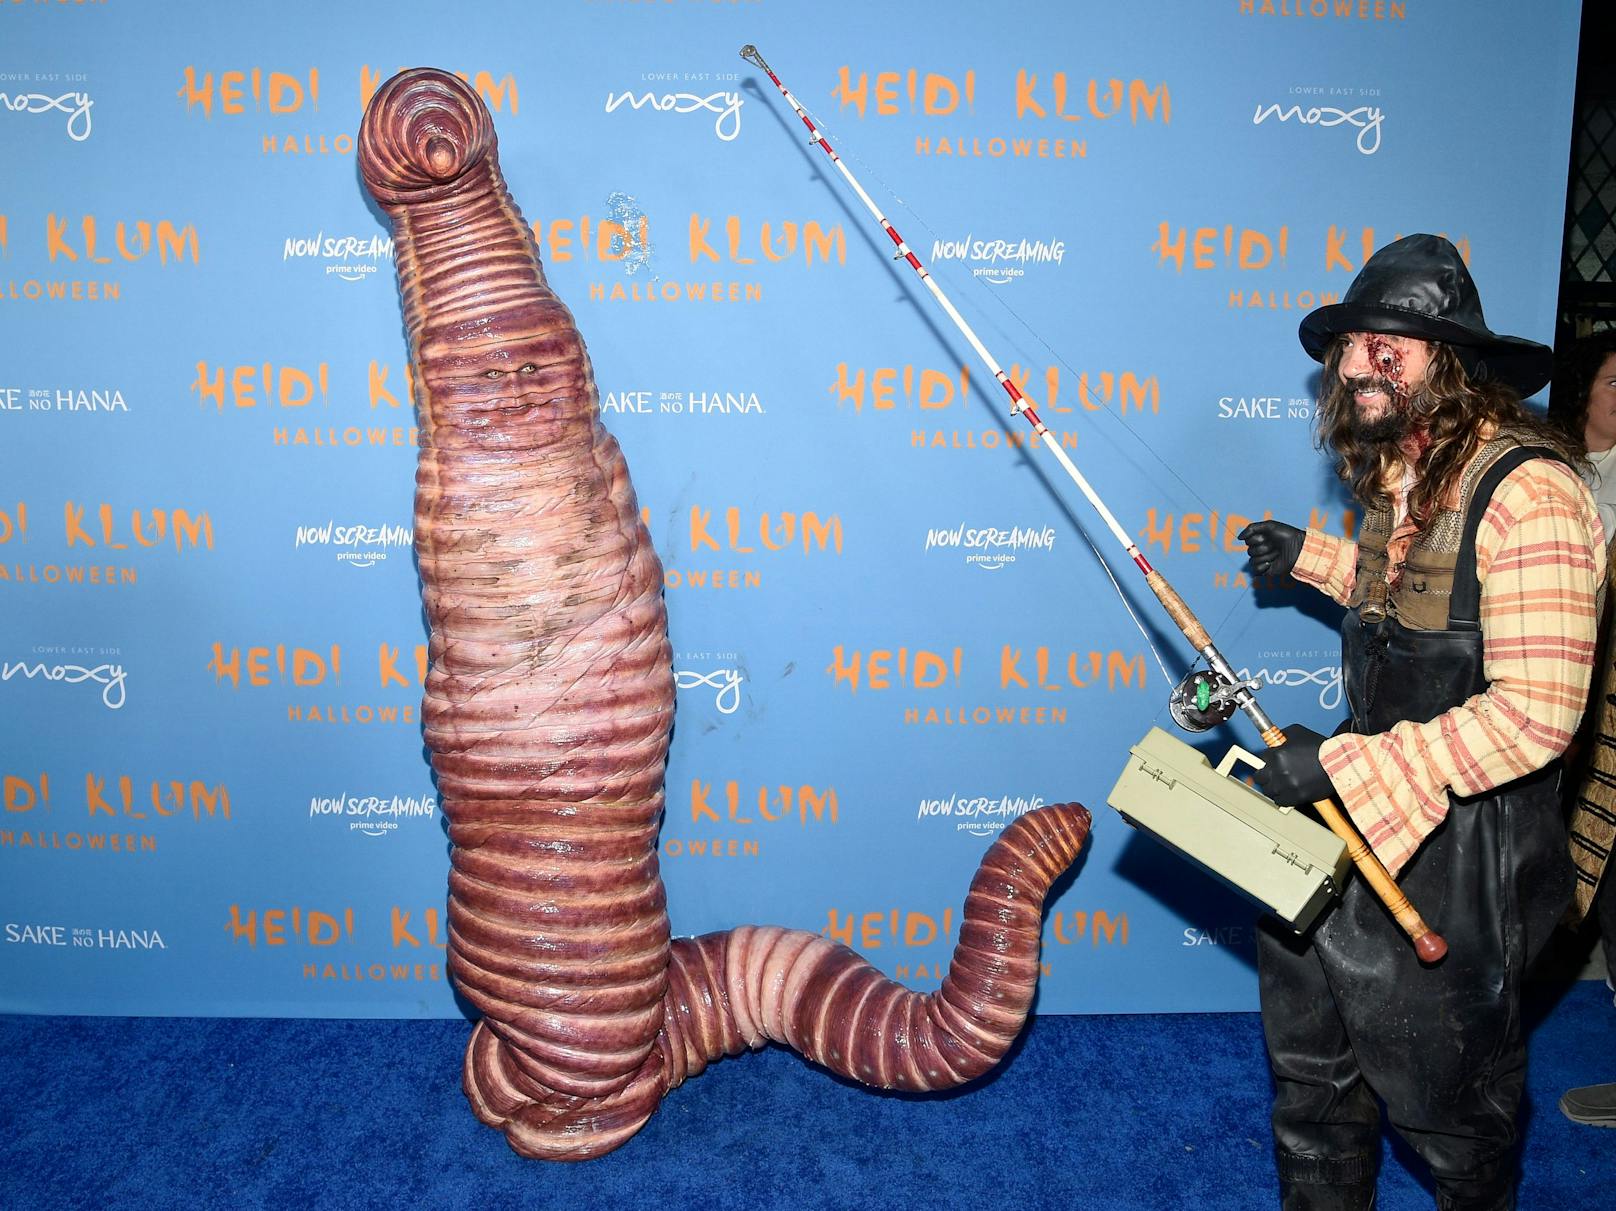 Heidi Klum als Wurm mit Tom Kaulitz als Angler